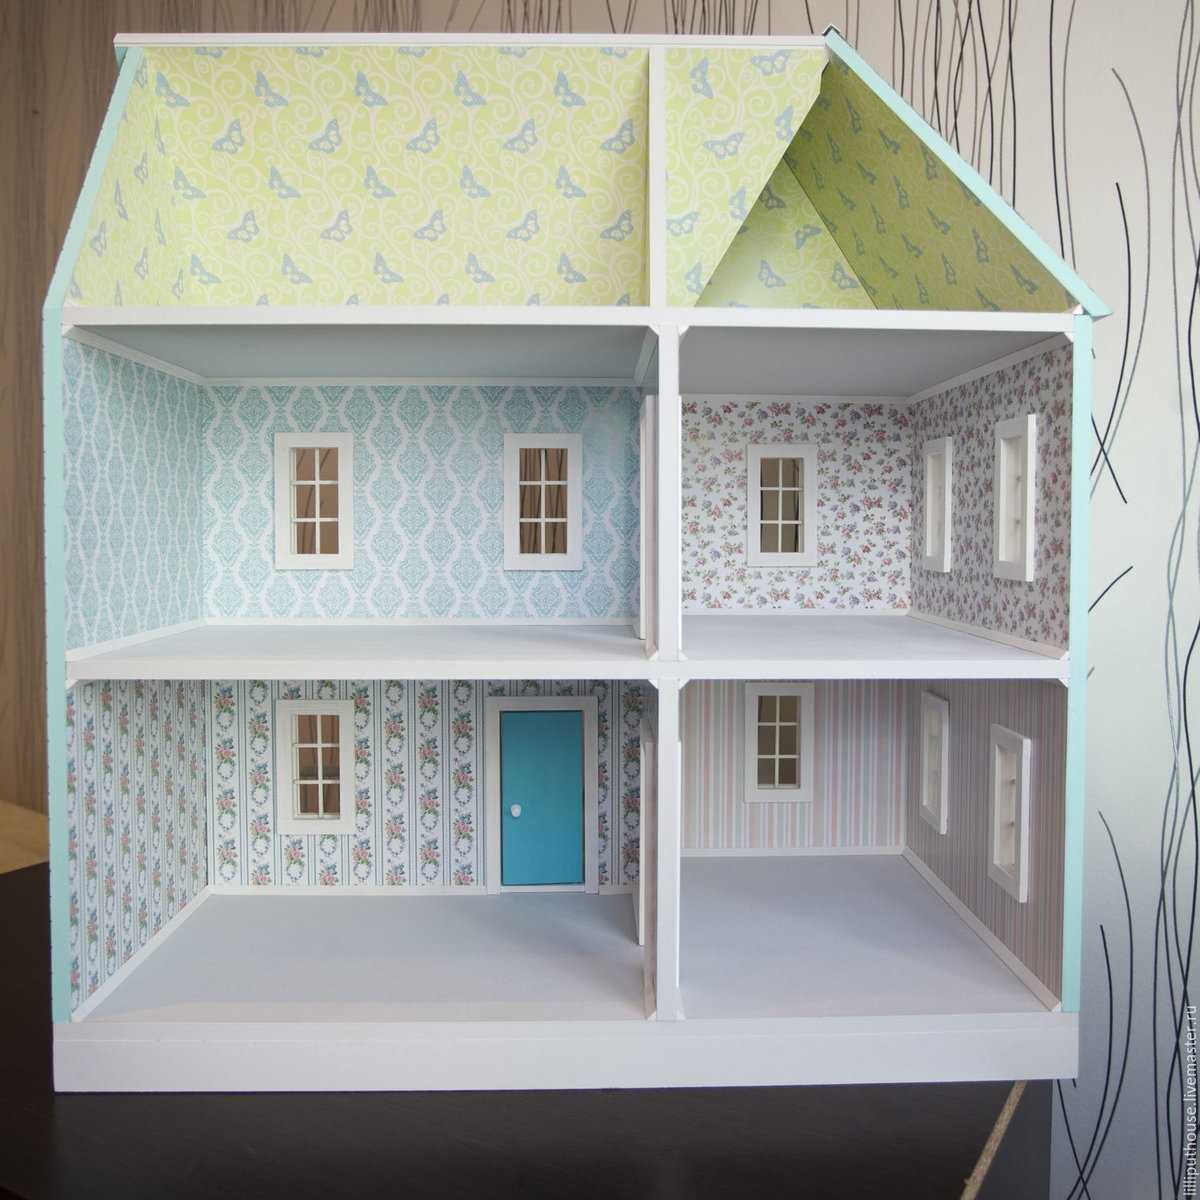 Кукольный домик своими руками из фанеры, коробки, картона, дерева: схема, чертежи с размерами. как сделать кукольный домик для барби, монстр хай?